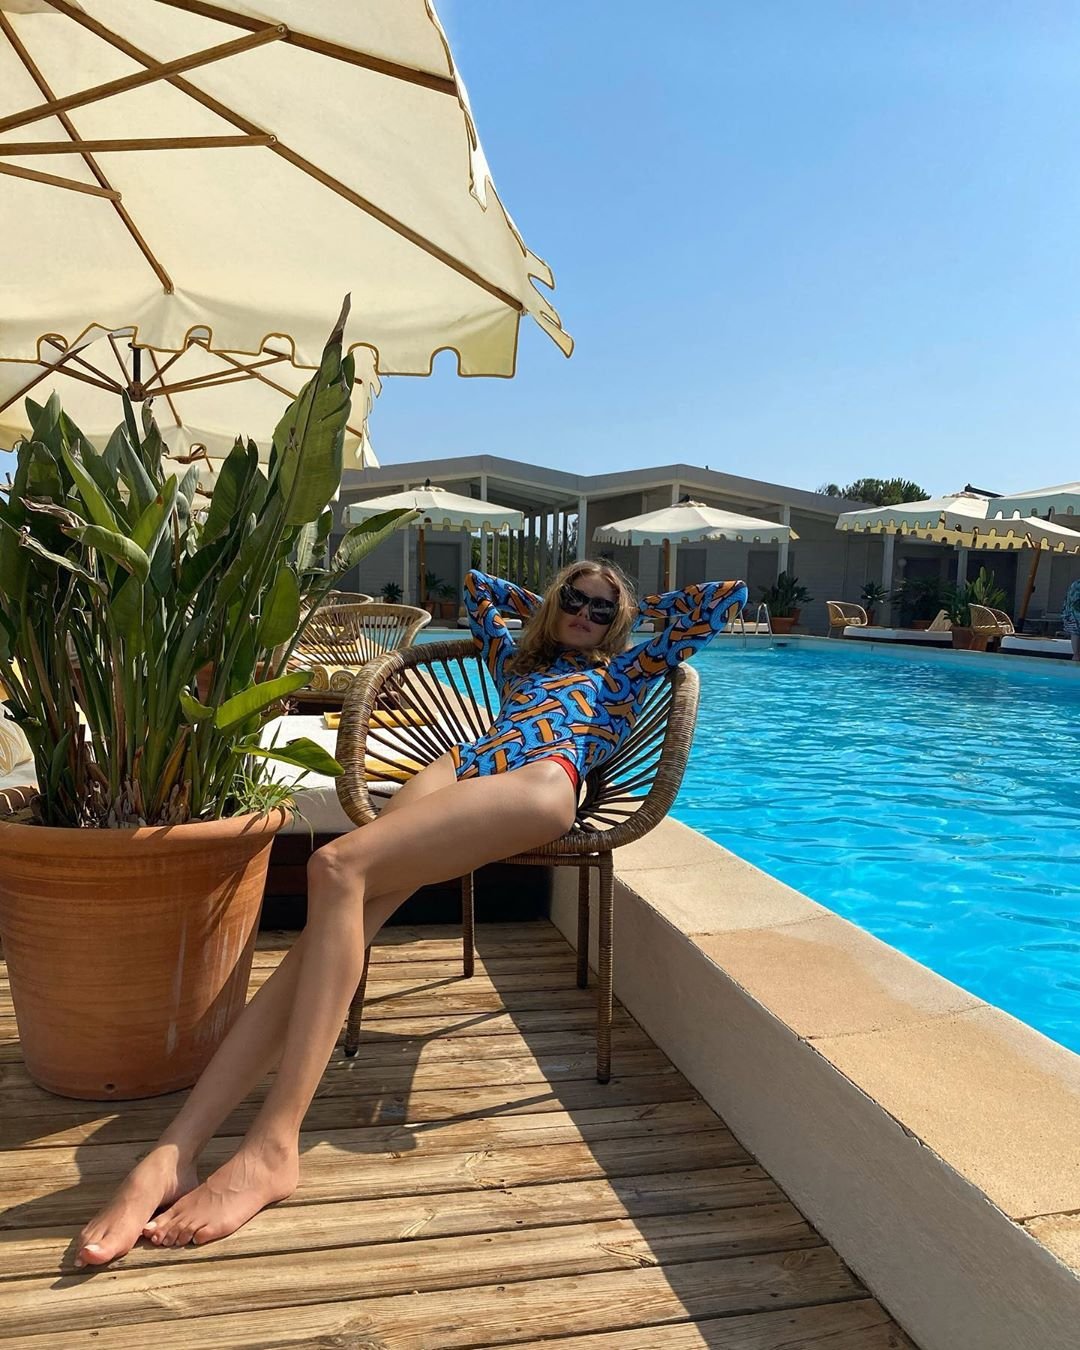 Наталья Водянова отдохнула в одном из роскошных отелей Франции